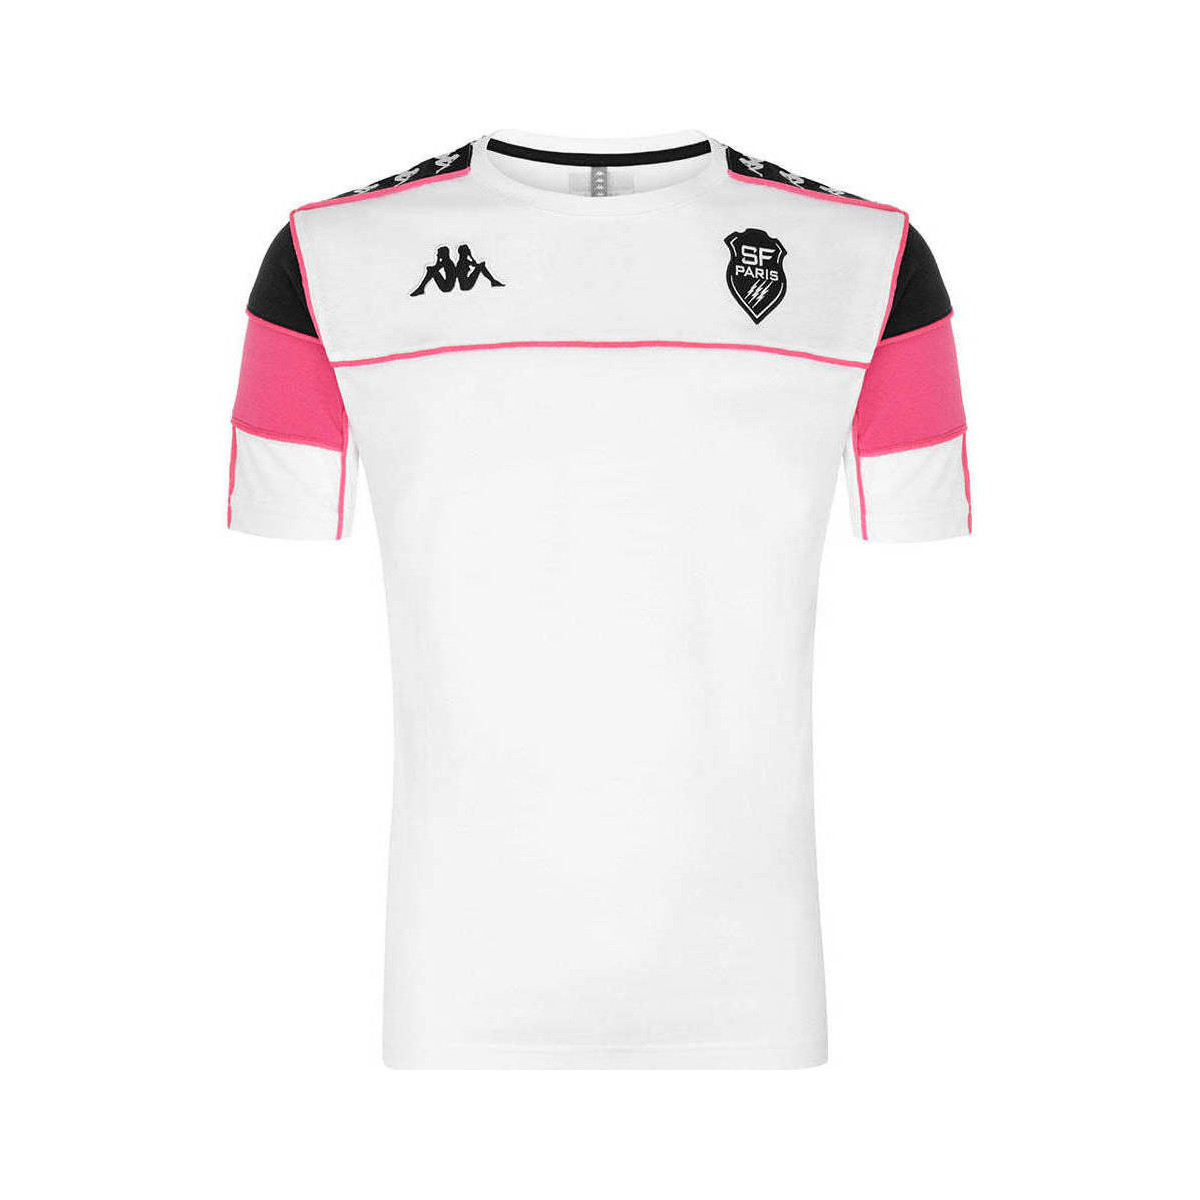 Kappa Blanc T-shirt Arari Stade Français Paris PDgdVCT7